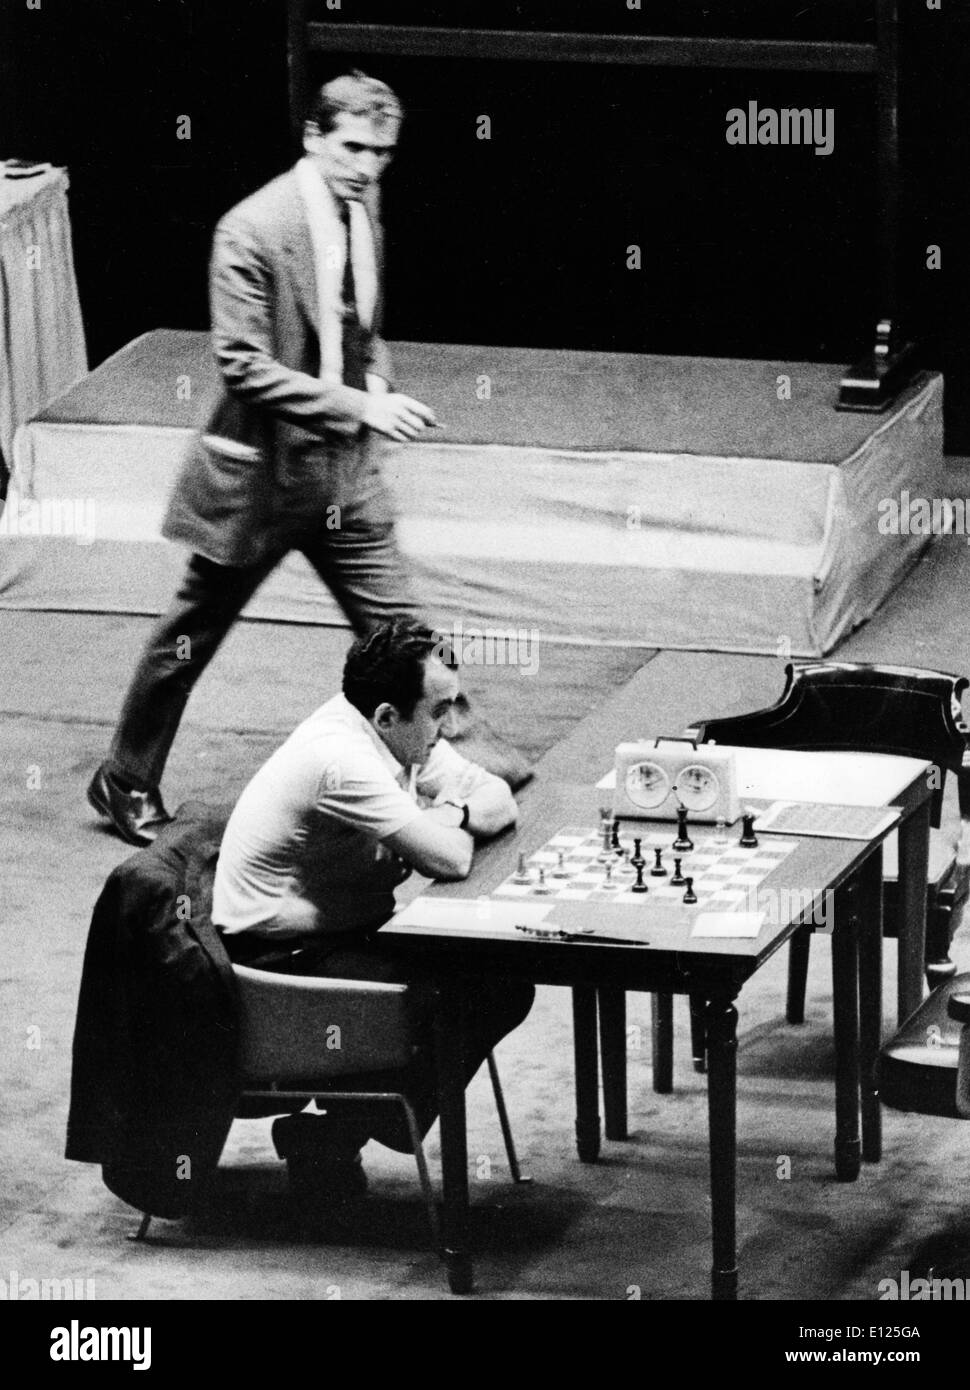 Jul 16, 2004; Buenos Aires, Argentina (Foto de archivo 10/23/1971) ex campeón mundial de ajedrez Bobby Fischer, de los Estados Unidos, detenido en Japón y quería en su país desde 1992 para romper un embargo internacional sobre la ex Yugoslavia, es ampliamente considerada como una de las mentes más brillantes del deporte de todos los tiempos. En 1972, en Helsinki, el genio americano rompió 24 años de dominación soviética al derrotar a Boris Spassky, y se llevó a casa un campeonato mundial Foto de stock